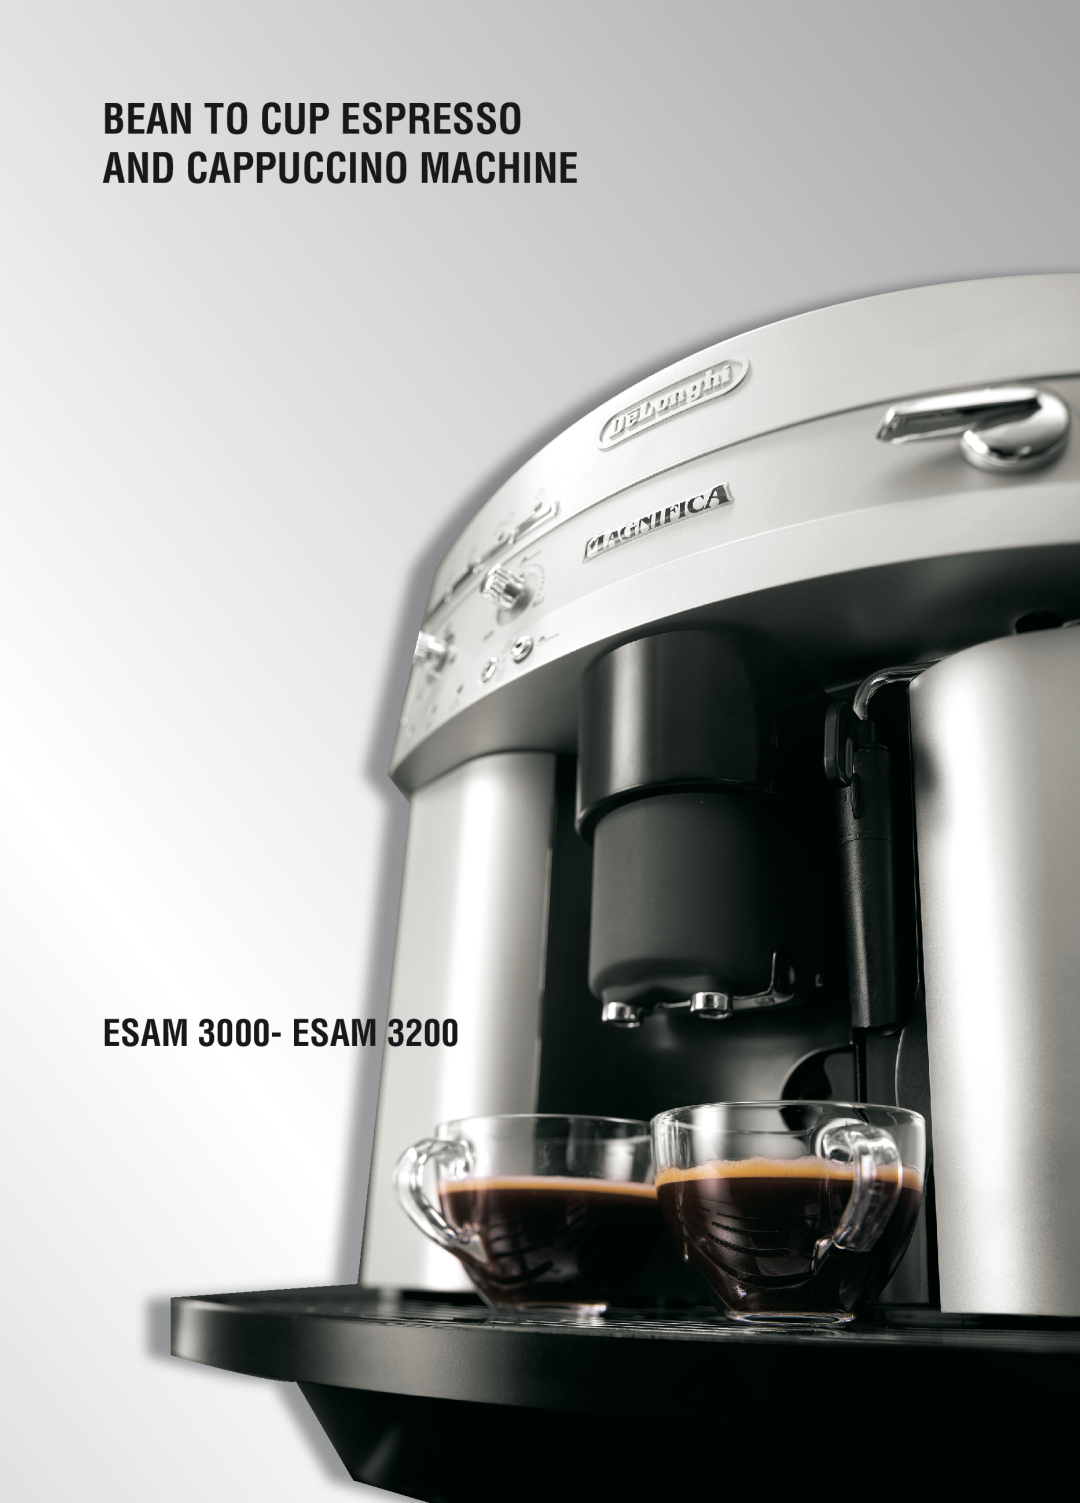 DeLonghi 31100, ESAM 3200 manual De Gb, ESAM 3000- ESAM, Bean To Cup Espresso And Cappuccino Machine 